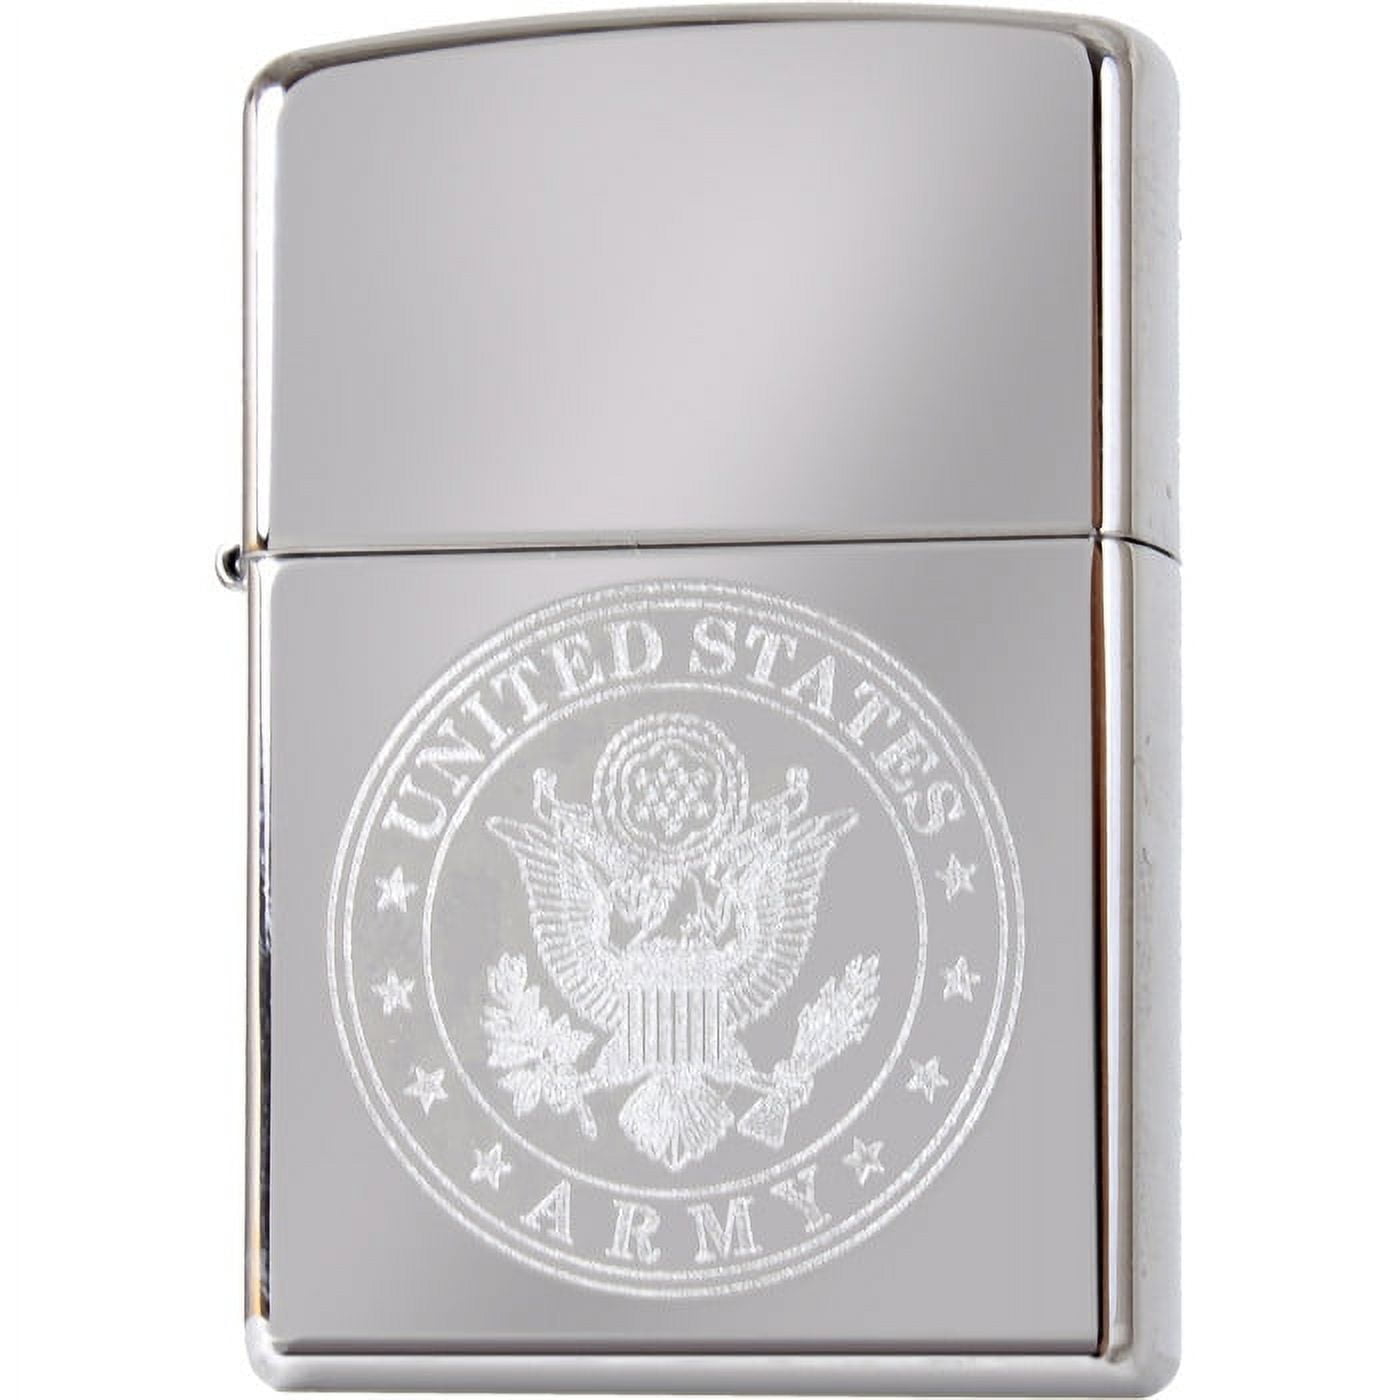 Chrome - US ARMY Zippo Lighter with Emblem - USA Made